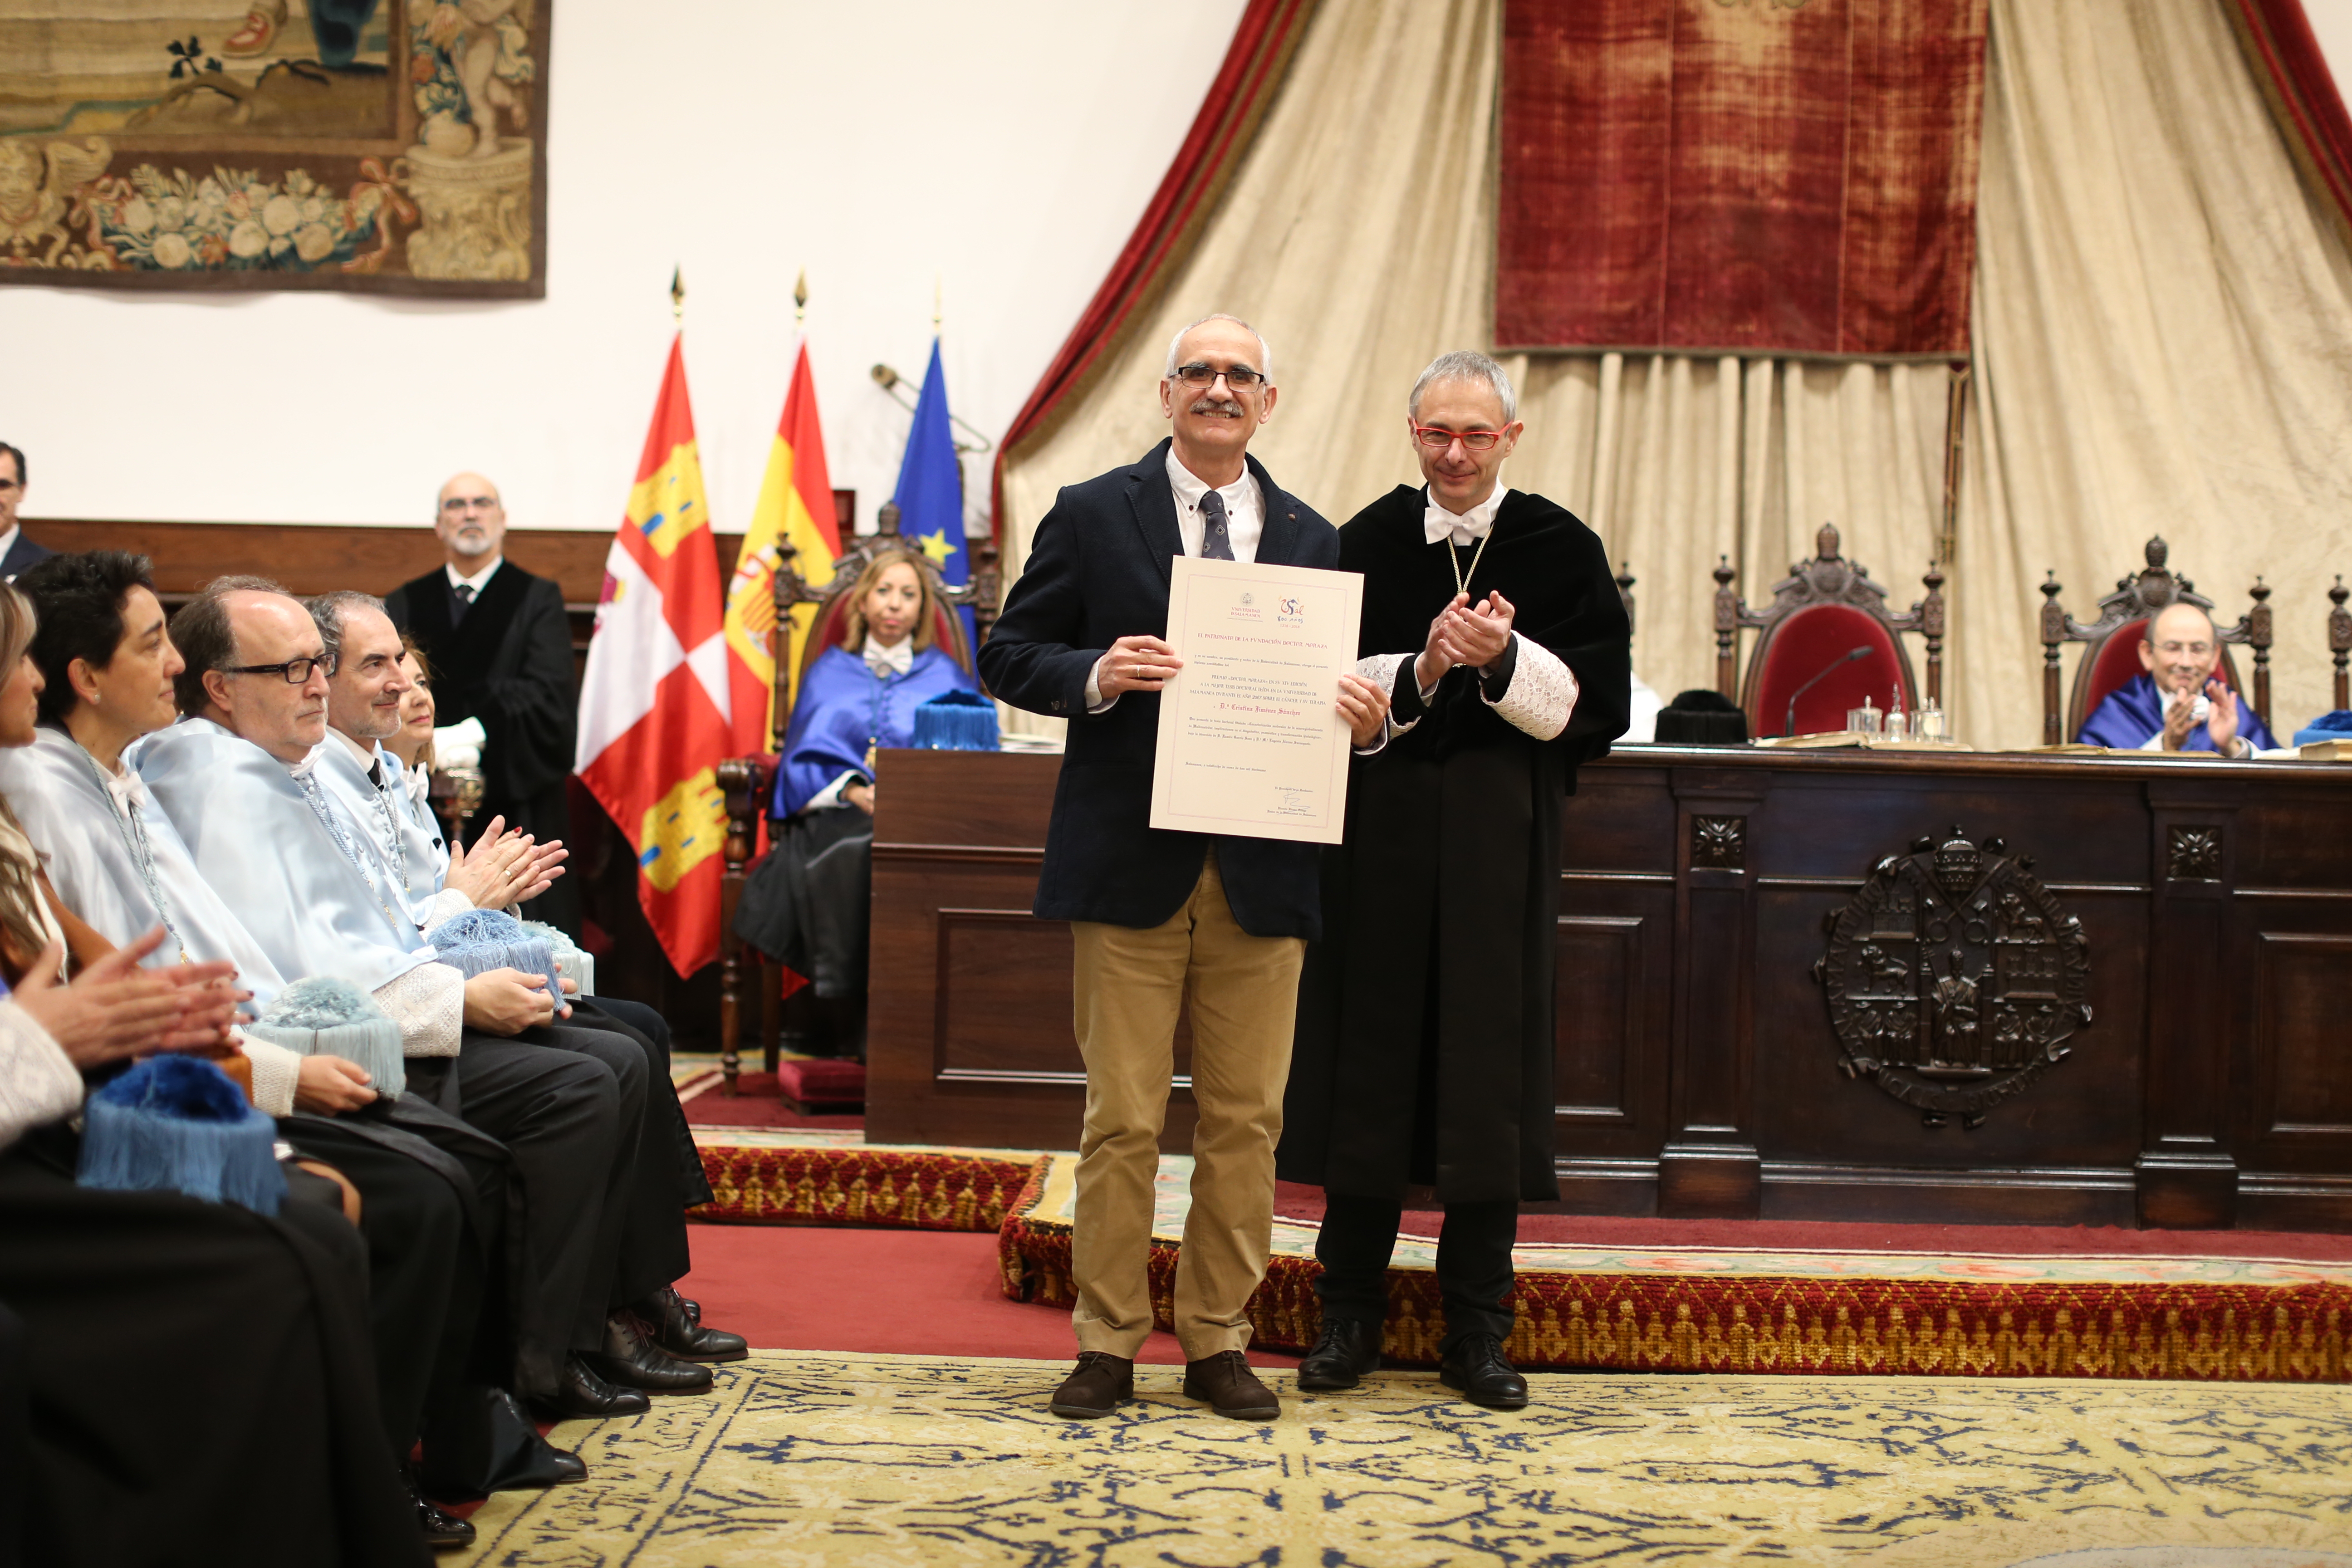 La Universidad de Salamanca celebra la festividad de Santo Tomás de Aquino con la entrega de la Medalla al exrector Daniel Hernández Ruipérez